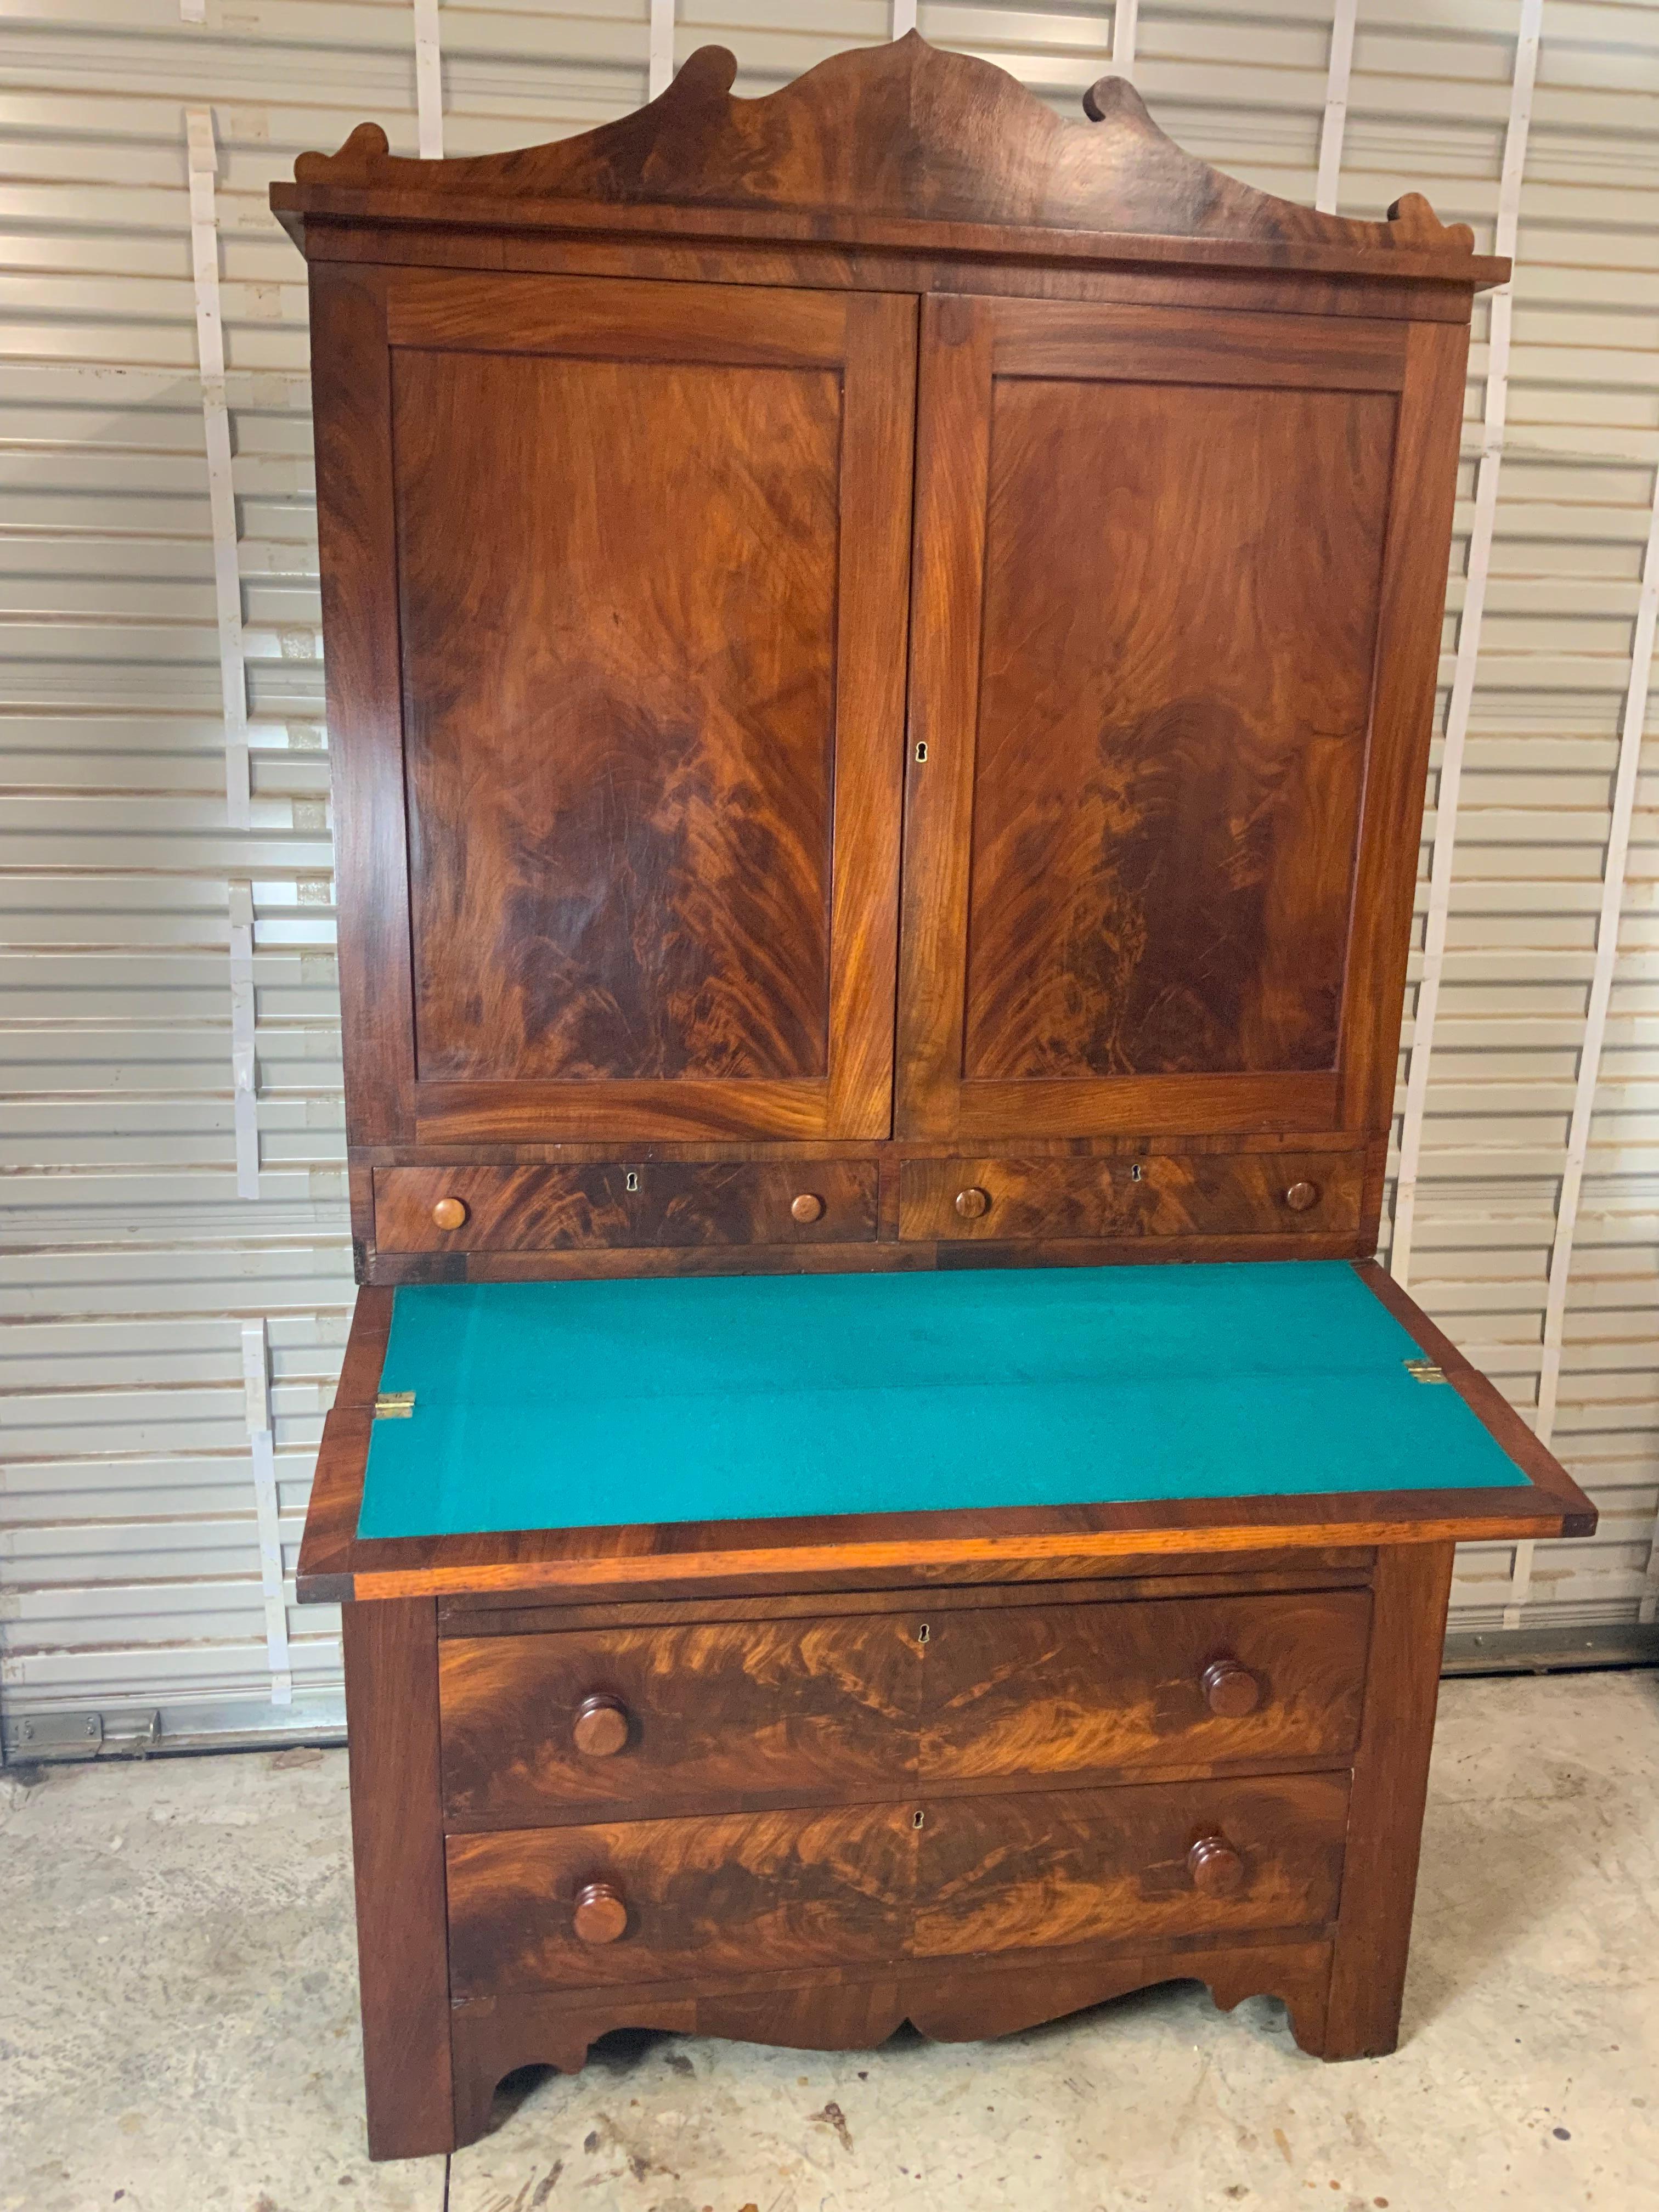 Eine sehr schöne späten amerikanischen Empire-Mahagoni-Schreibtisch. Insgesamt sehr guter Zustand mit einer alten nachgearbeiteten Oberfläche, die eine schöne Farbe und Patina auf dem gemaserten Mahagoni aufweist.  Gehäuse und Schubladen aus